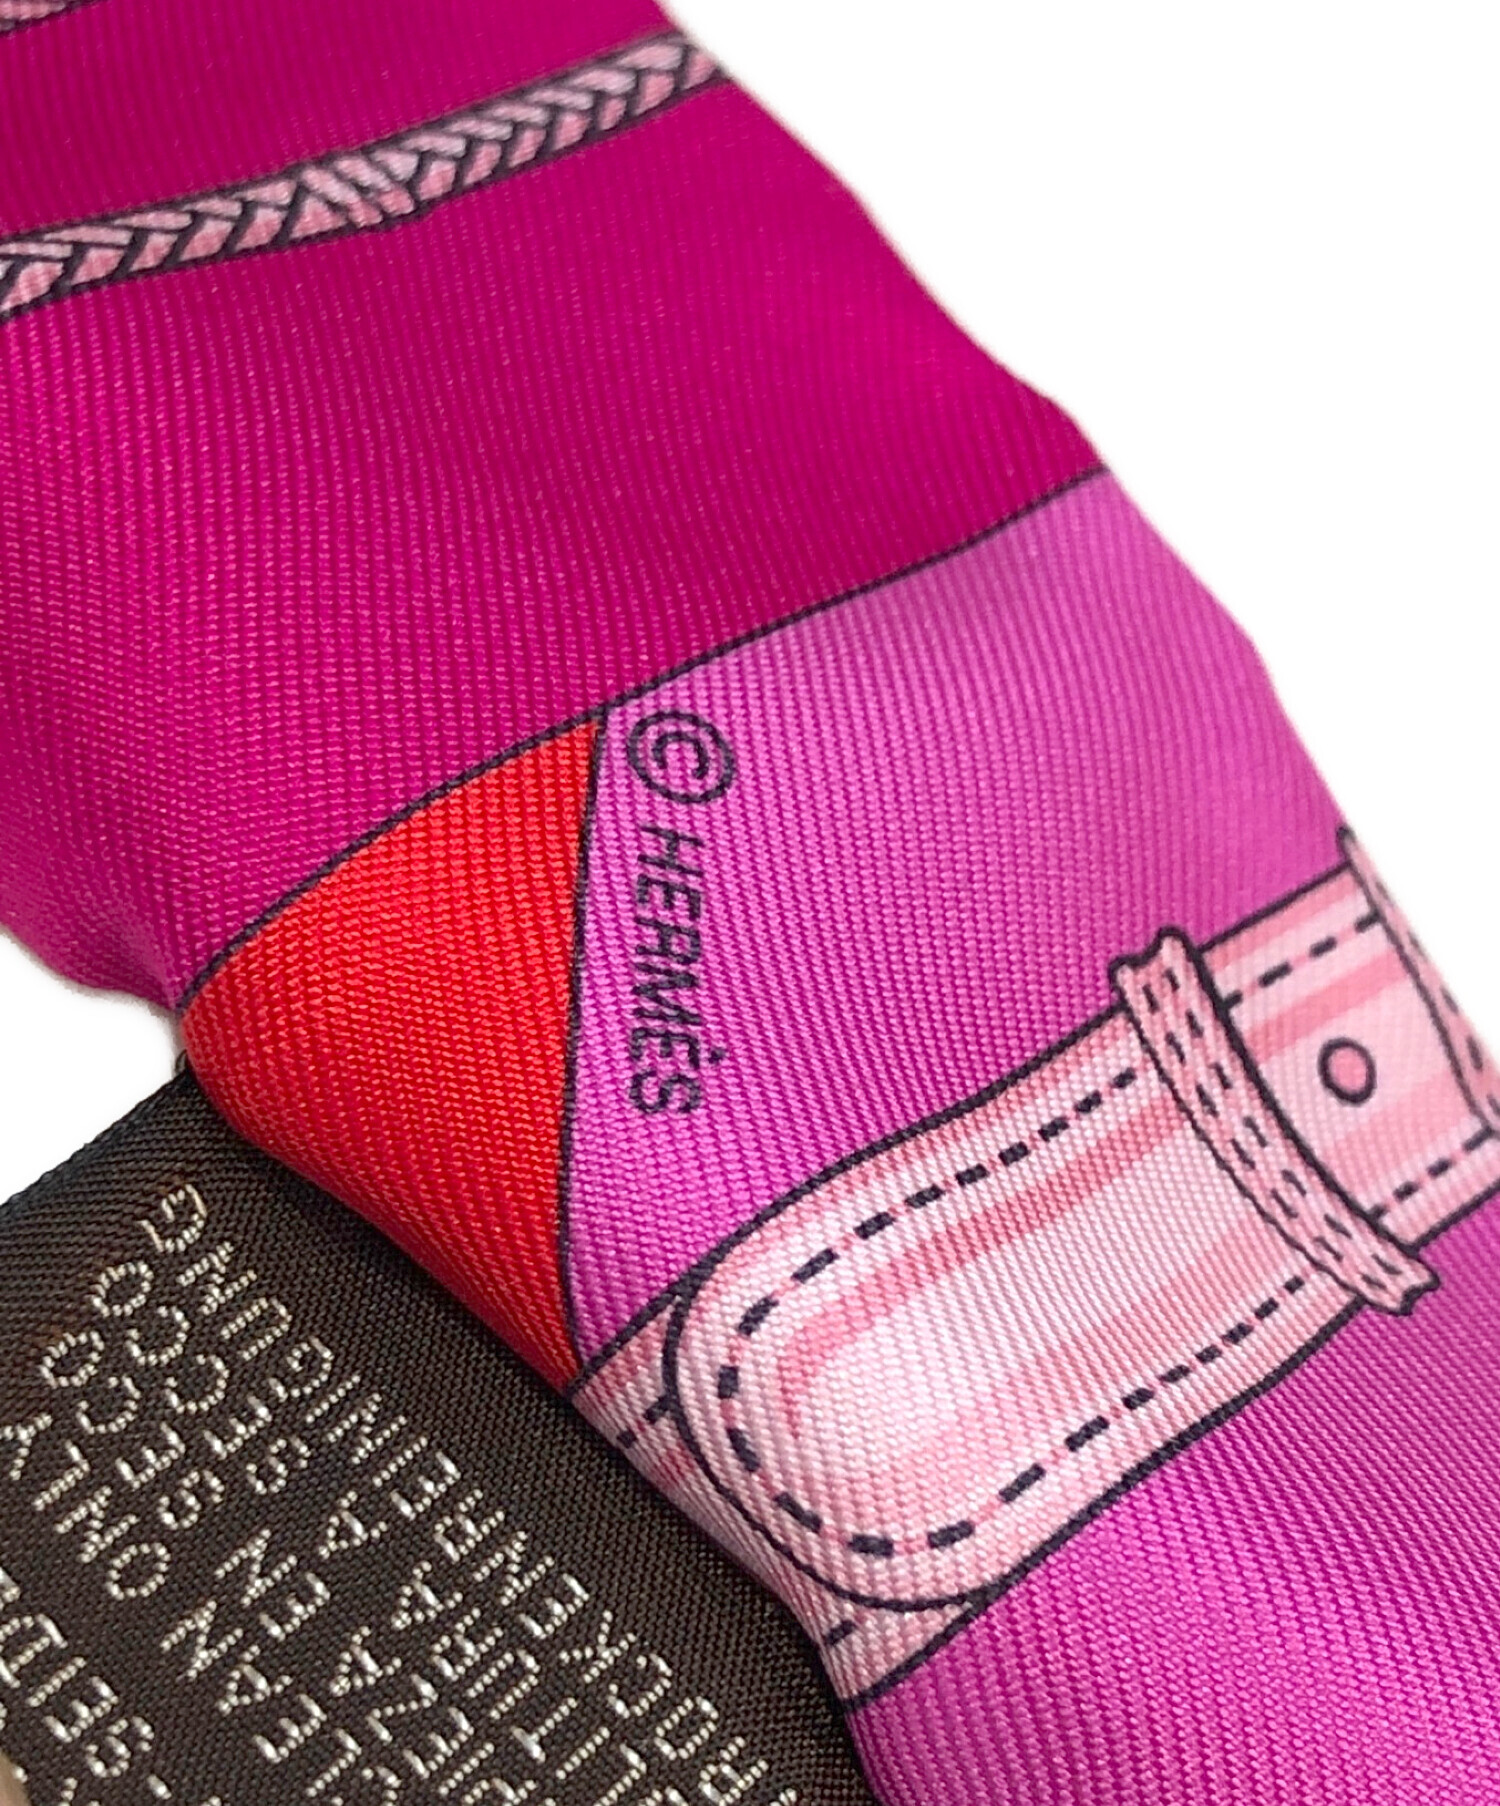 ファッション小物エルメススカーフ、ピンク